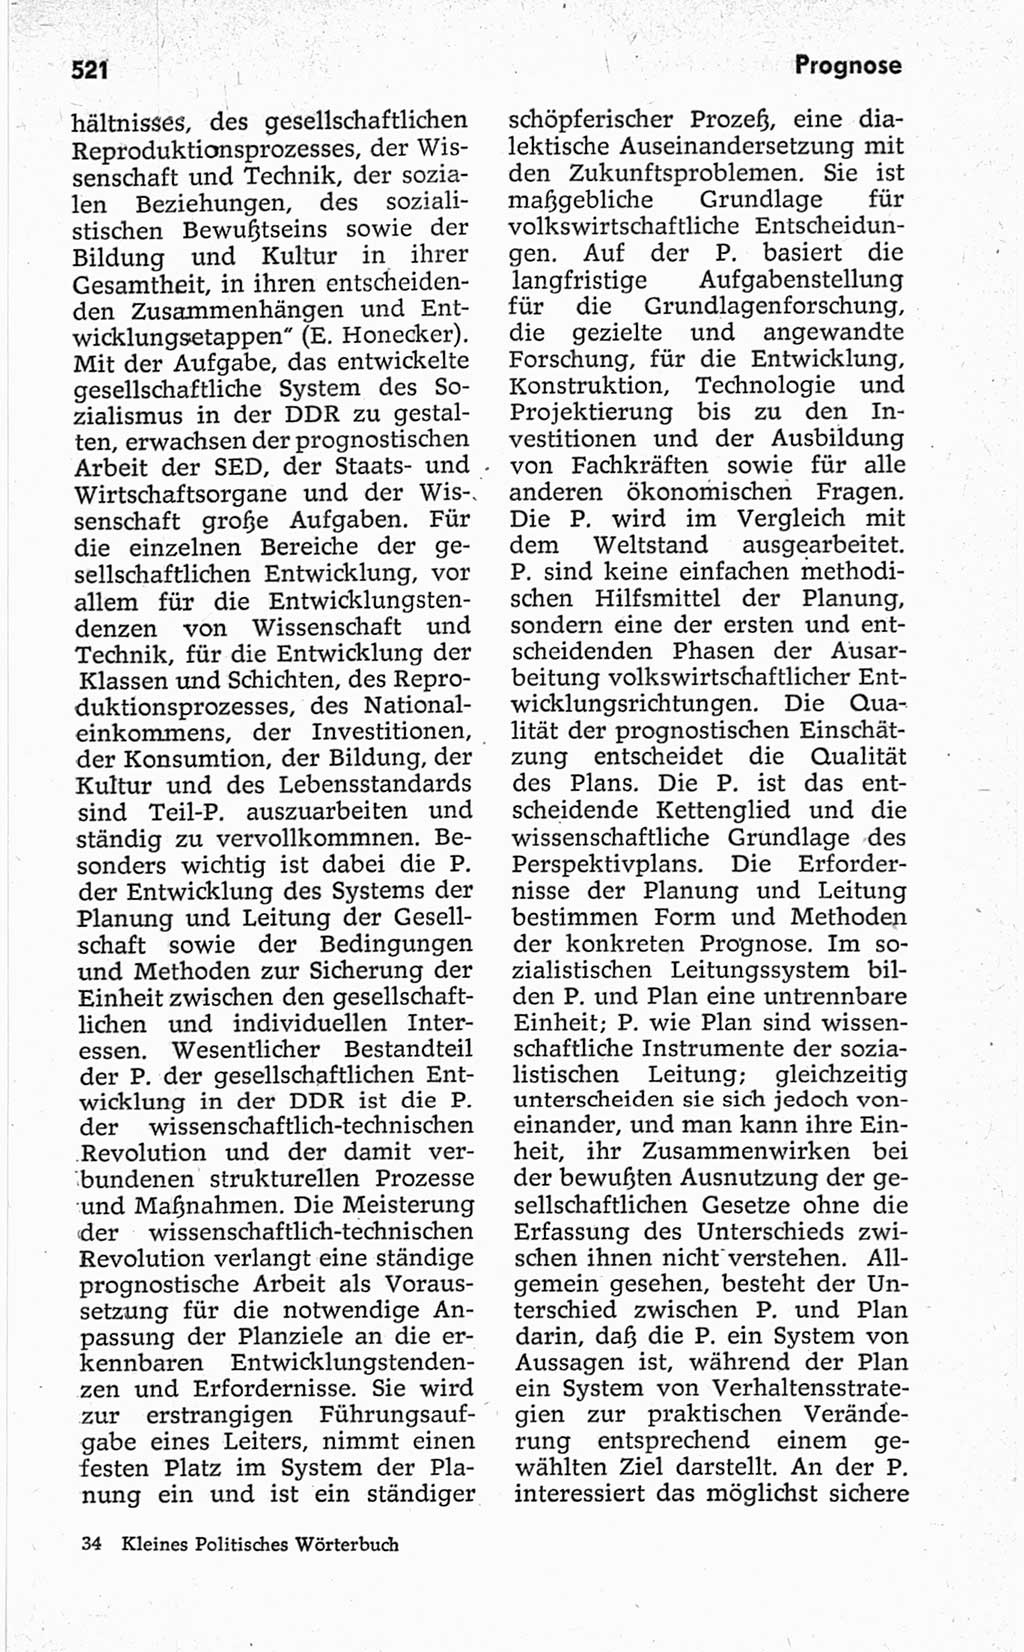 Kleines politisches Wörterbuch [Deutsche Demokratische Republik (DDR)] 1967, Seite 521 (Kl. pol. Wb. DDR 1967, S. 521)